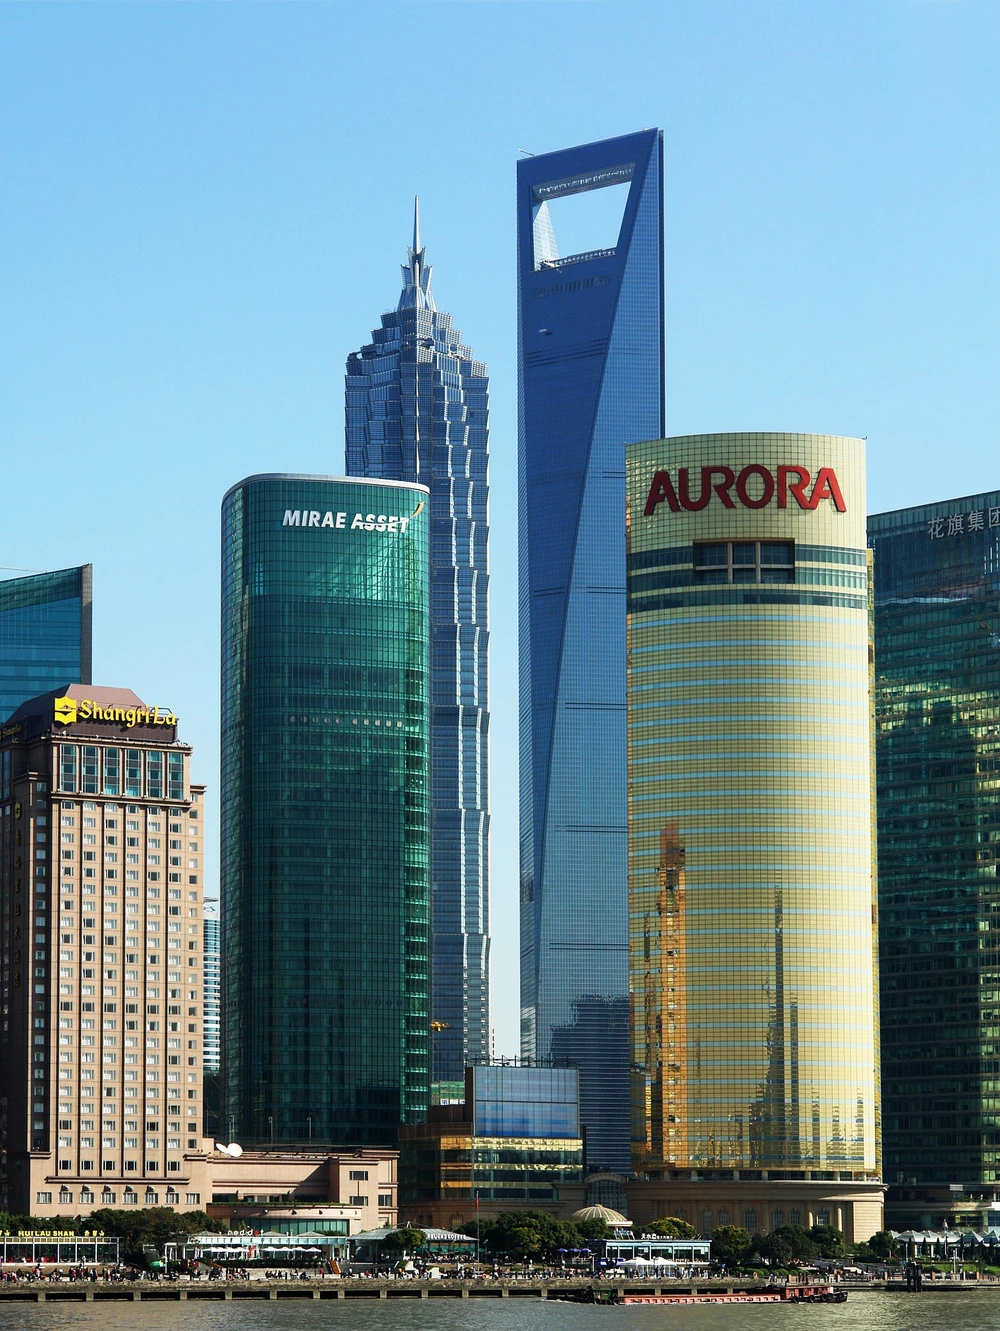  Các tòa nhà chọc trời ở thành phố Thượng Hải, Trung Quốc